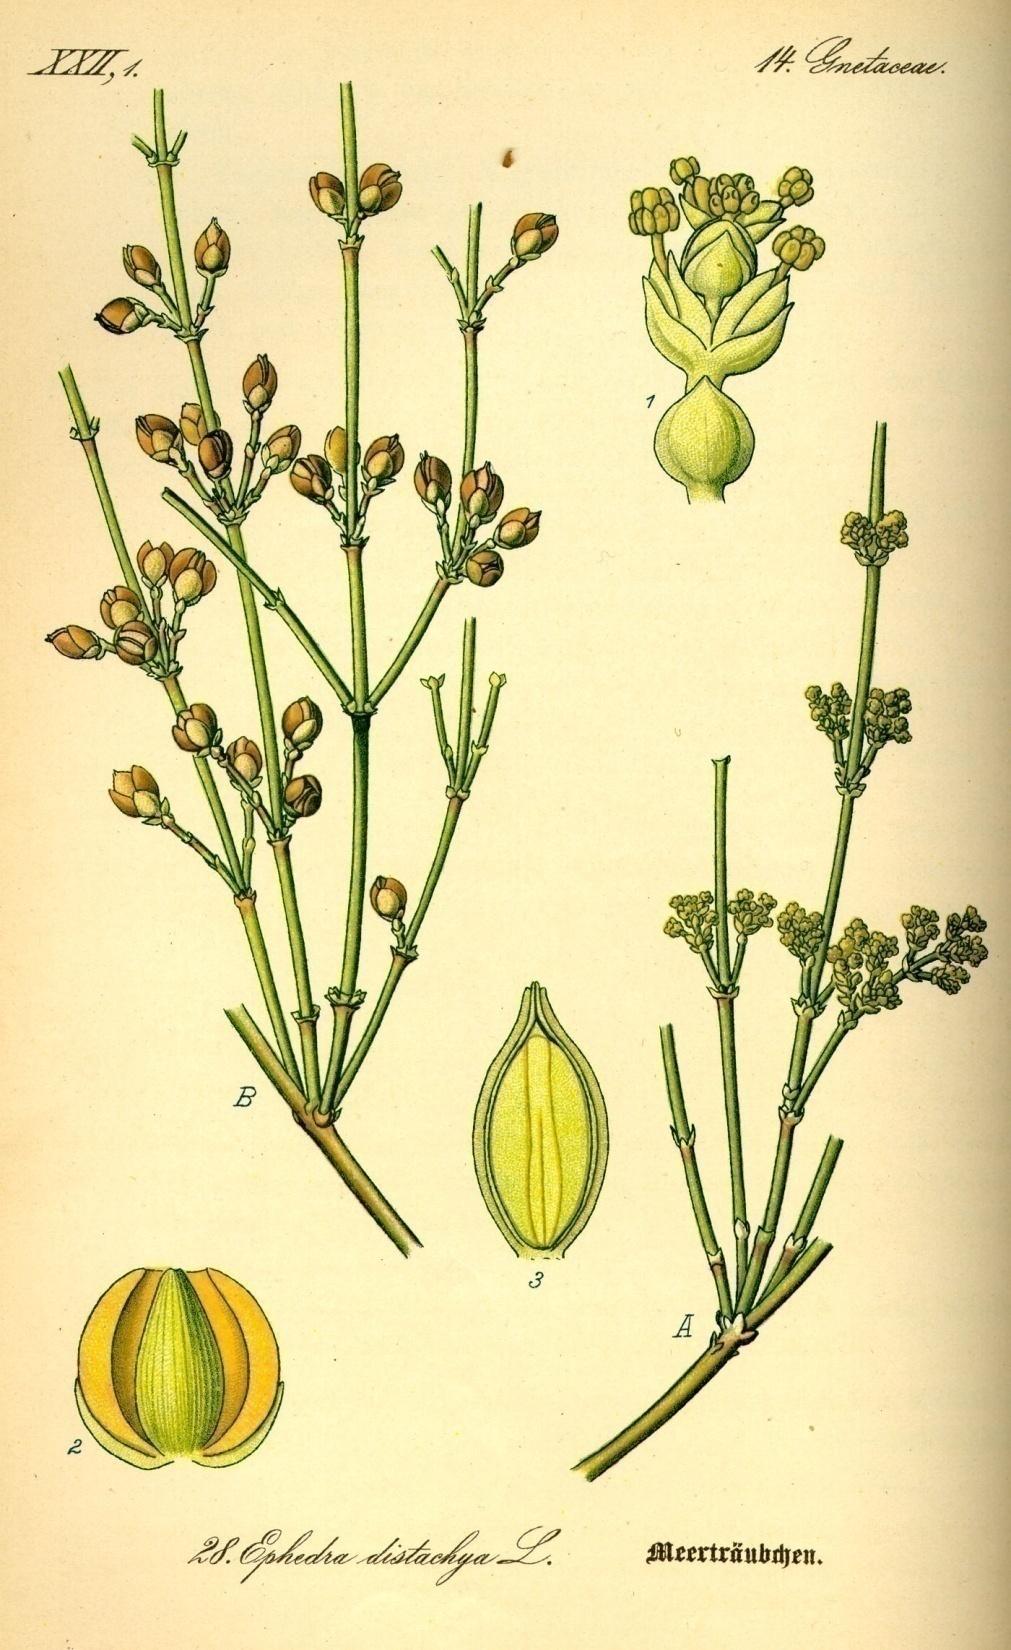 Efedra je dvodoma biljka.